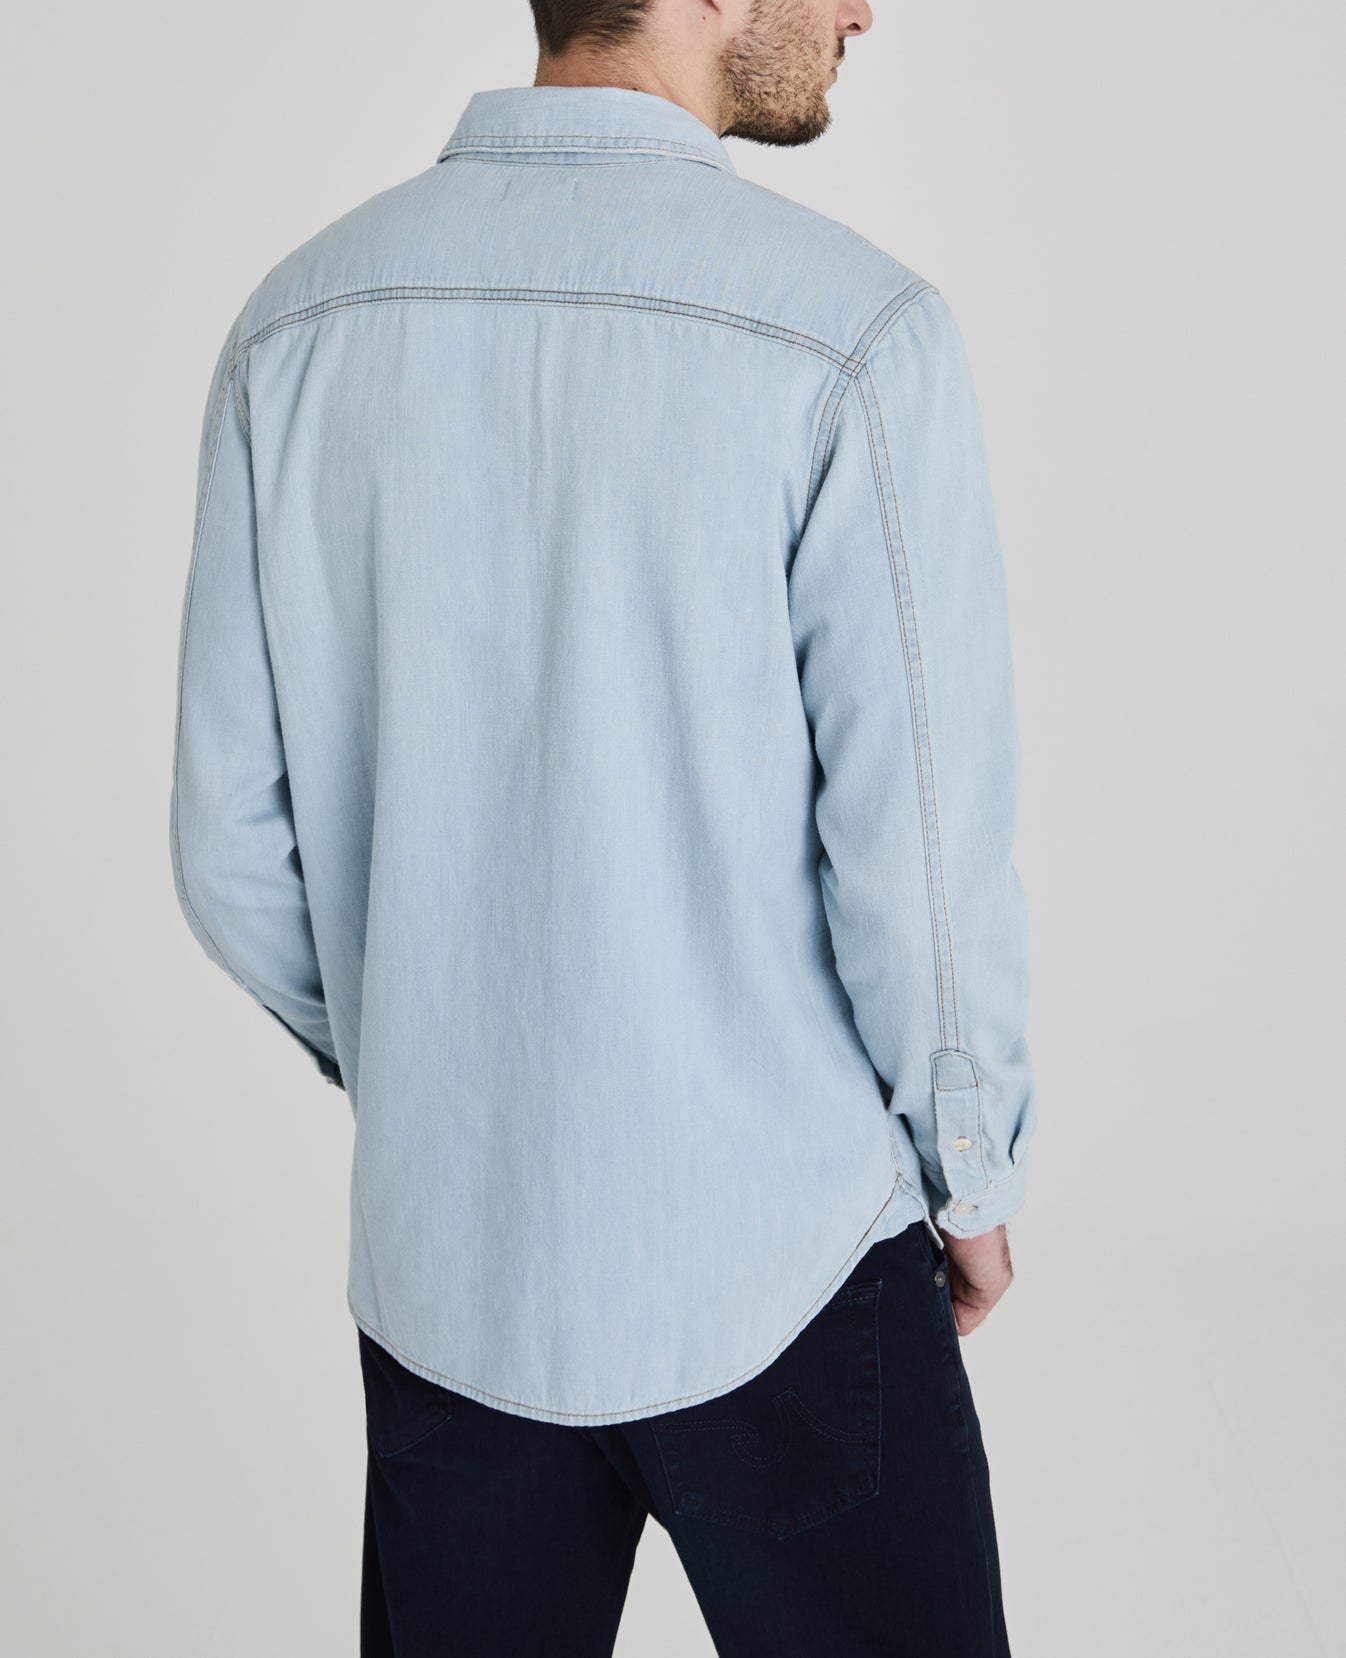 Benning Utility Shirt Ricochet Long Sleeve Buttondown Men Tops Photo 7